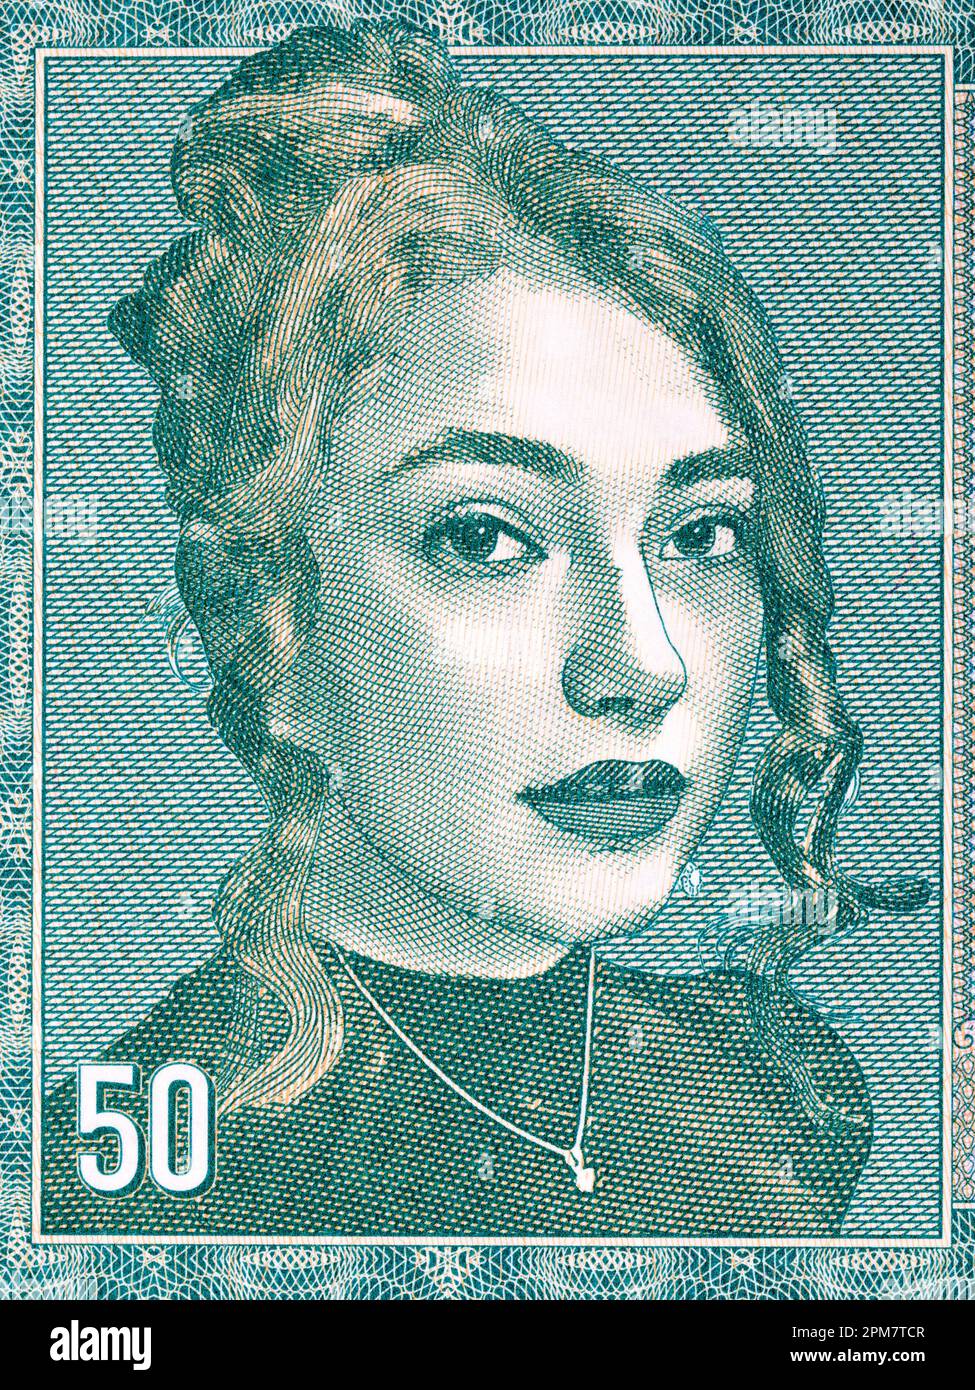 Ritratto di una giovane donna del Liechtenstein denaro - Frank Foto Stock